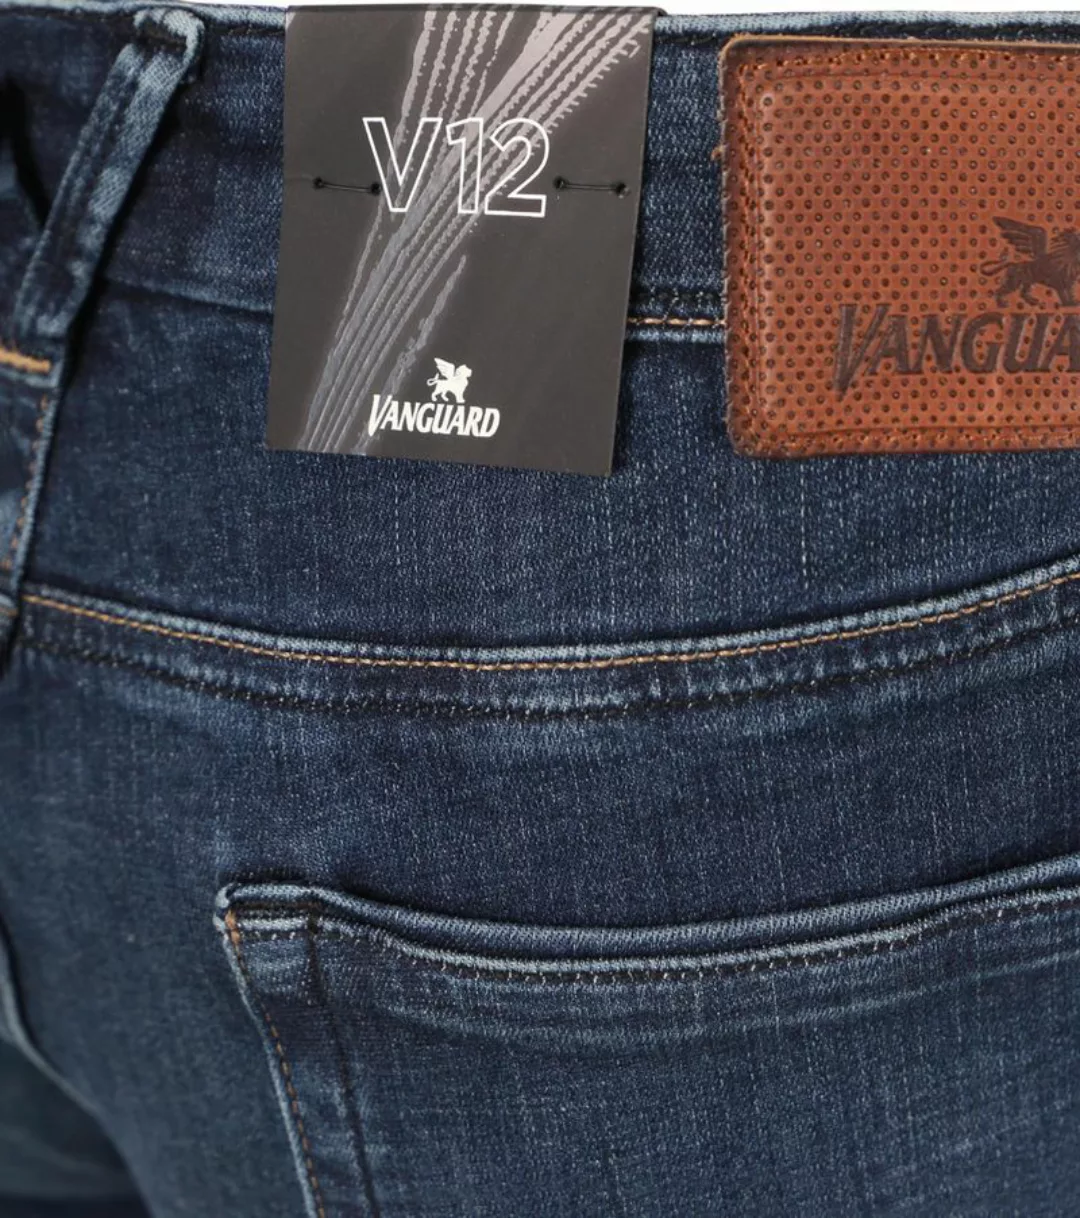 Vanguard Jeans V12 Rider Blau DBG - Größe W 35 - L 30 günstig online kaufen